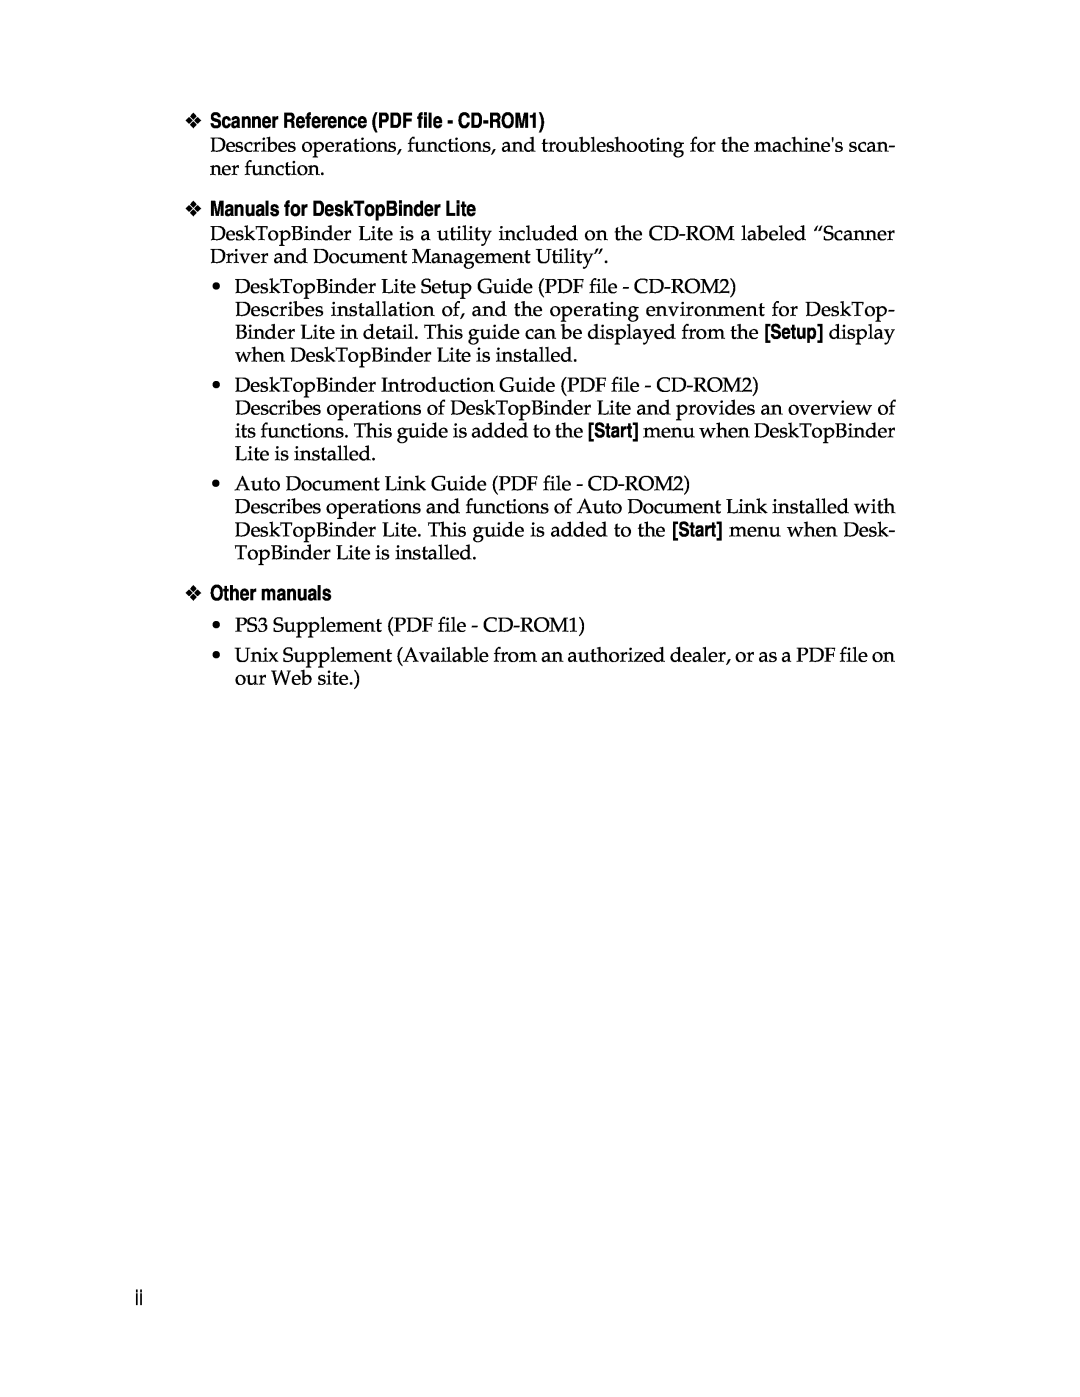 Lanier LD225, LD230 Scanner Reference PDF file - CD-ROM1, Manuals for DeskTopBinder Lite, Other manuals 